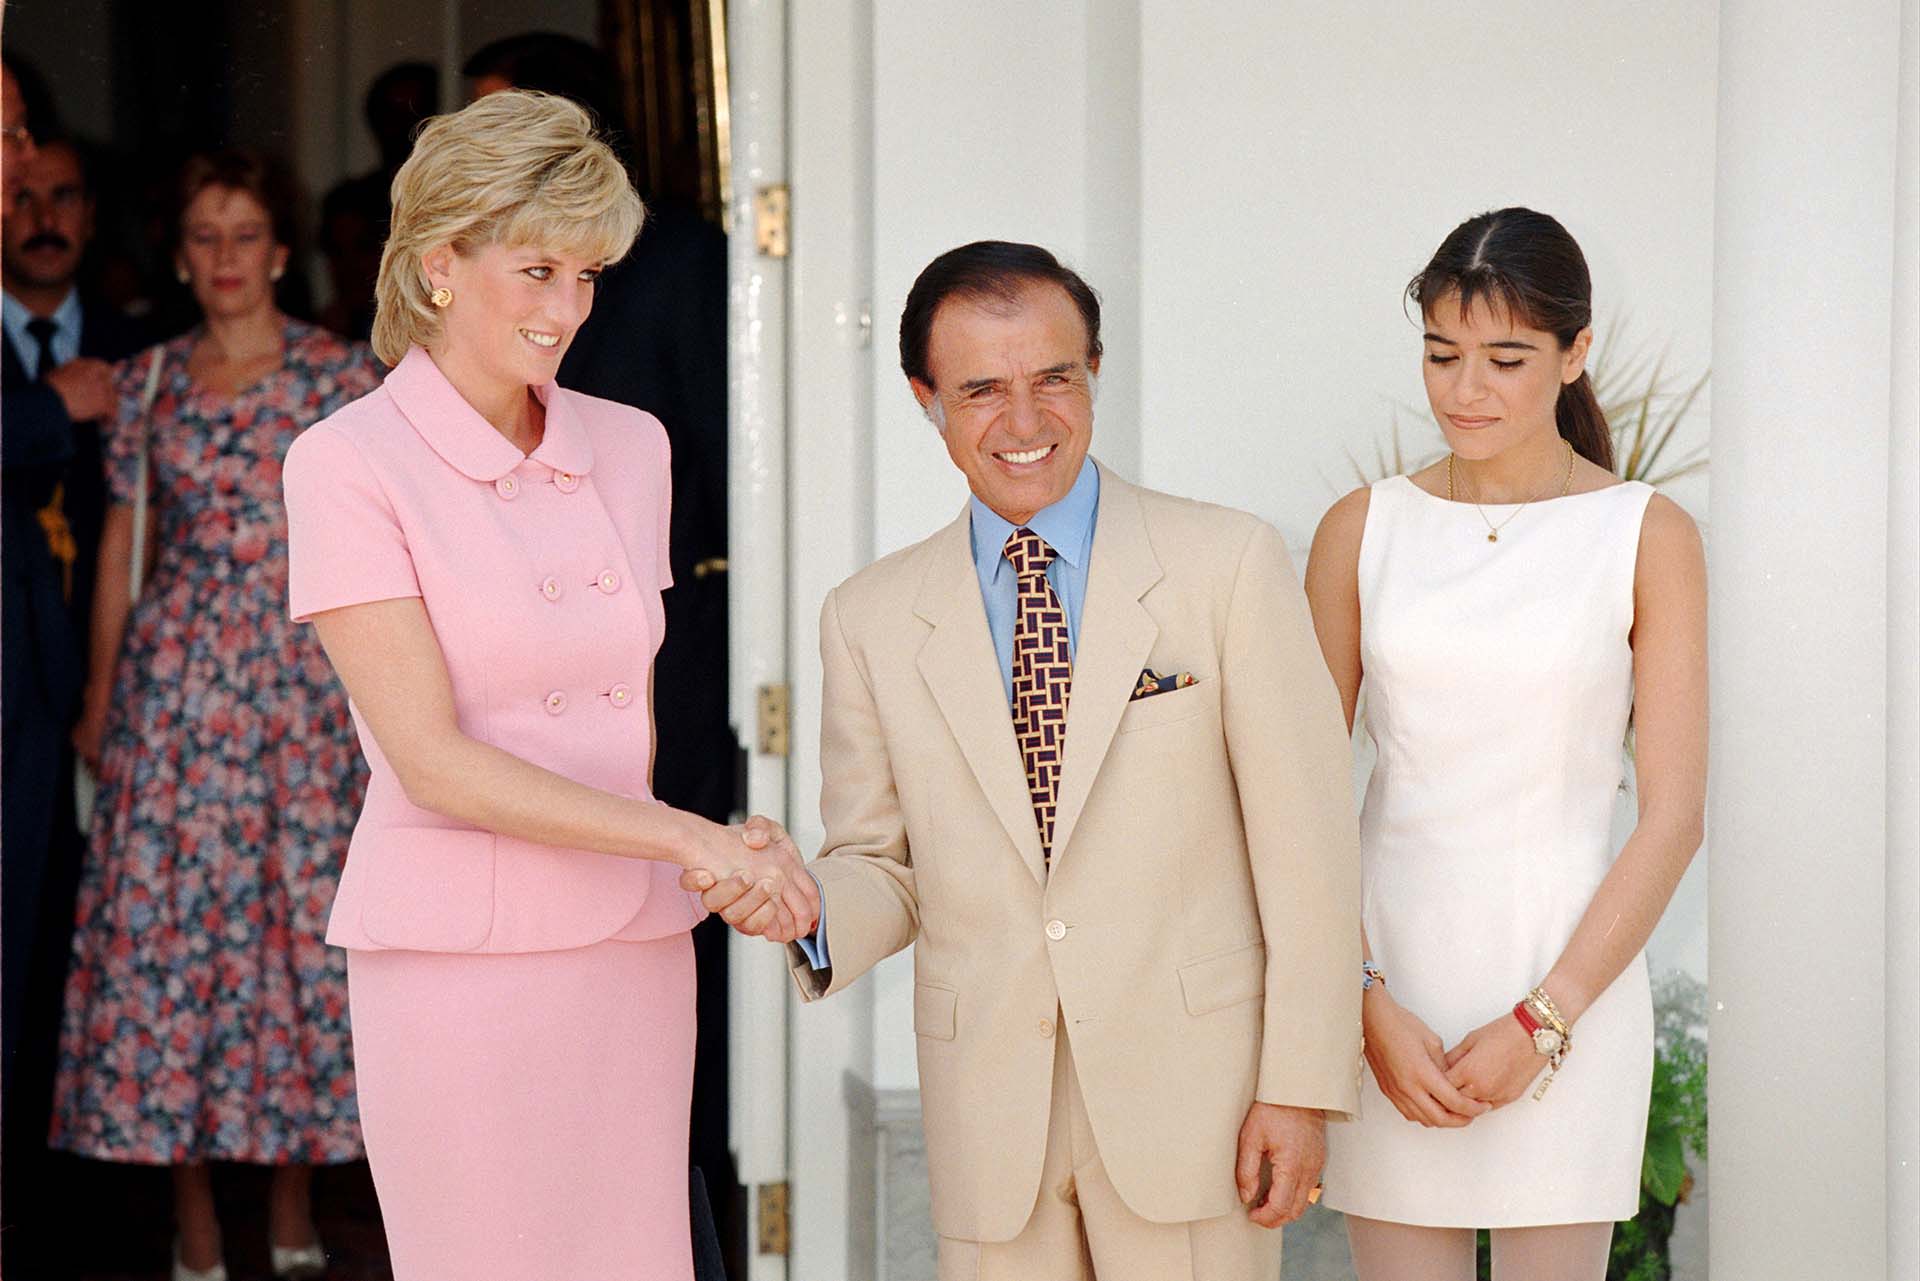 Acompañado por Zulemita, el 23 de noviembre del año 1995 Menem recibió a Diana, la princesa de Gales, que aterrizó en Argentina para dar inicio a una gira de beneficencia. Lady Di visitó el Hospital Garrahan y la Quinta de Olivos